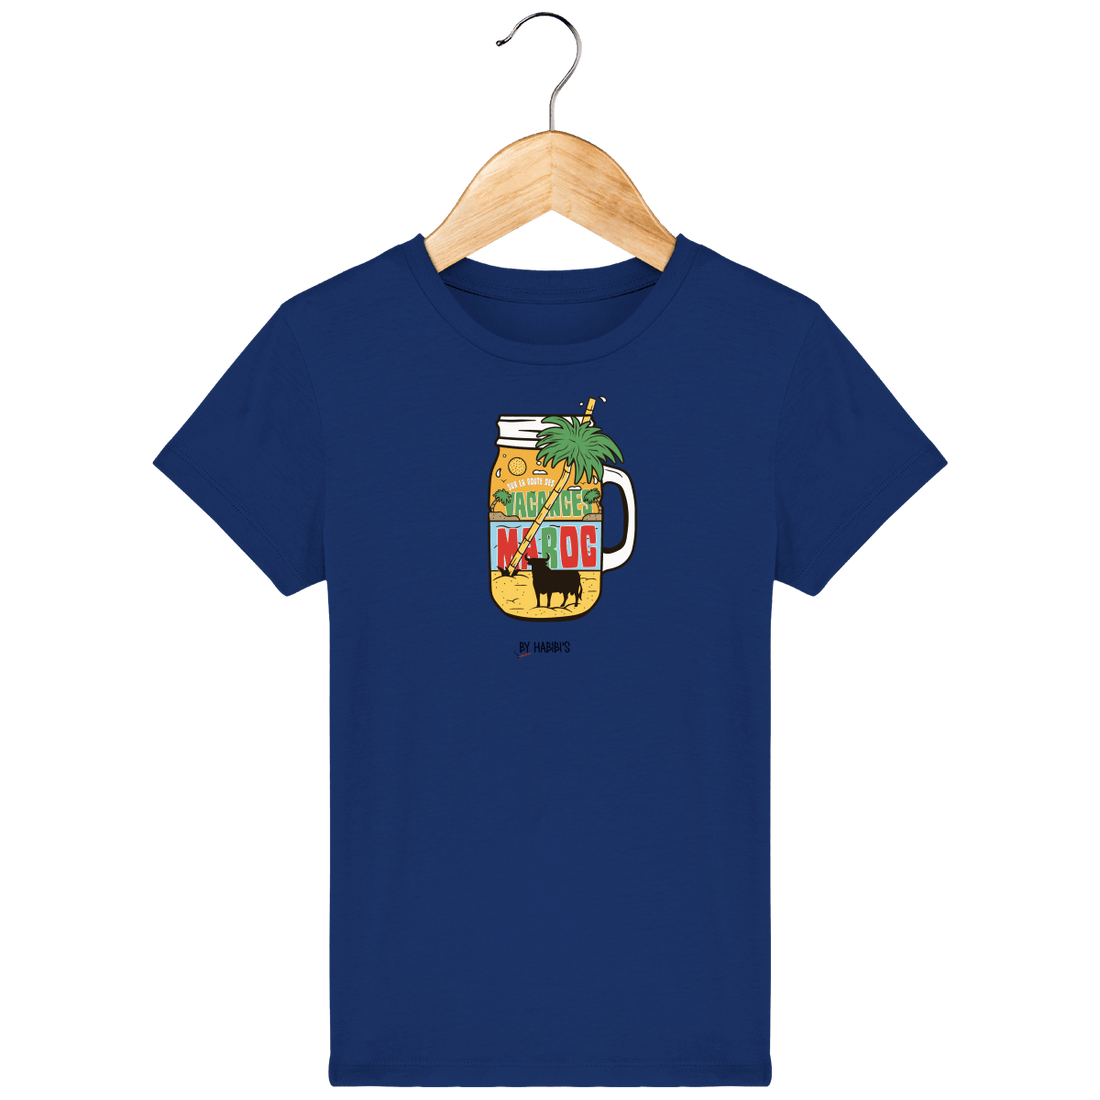 Enfant & Bébé>Tee-shirts - T-shirt Enfant <br> Été Maroc